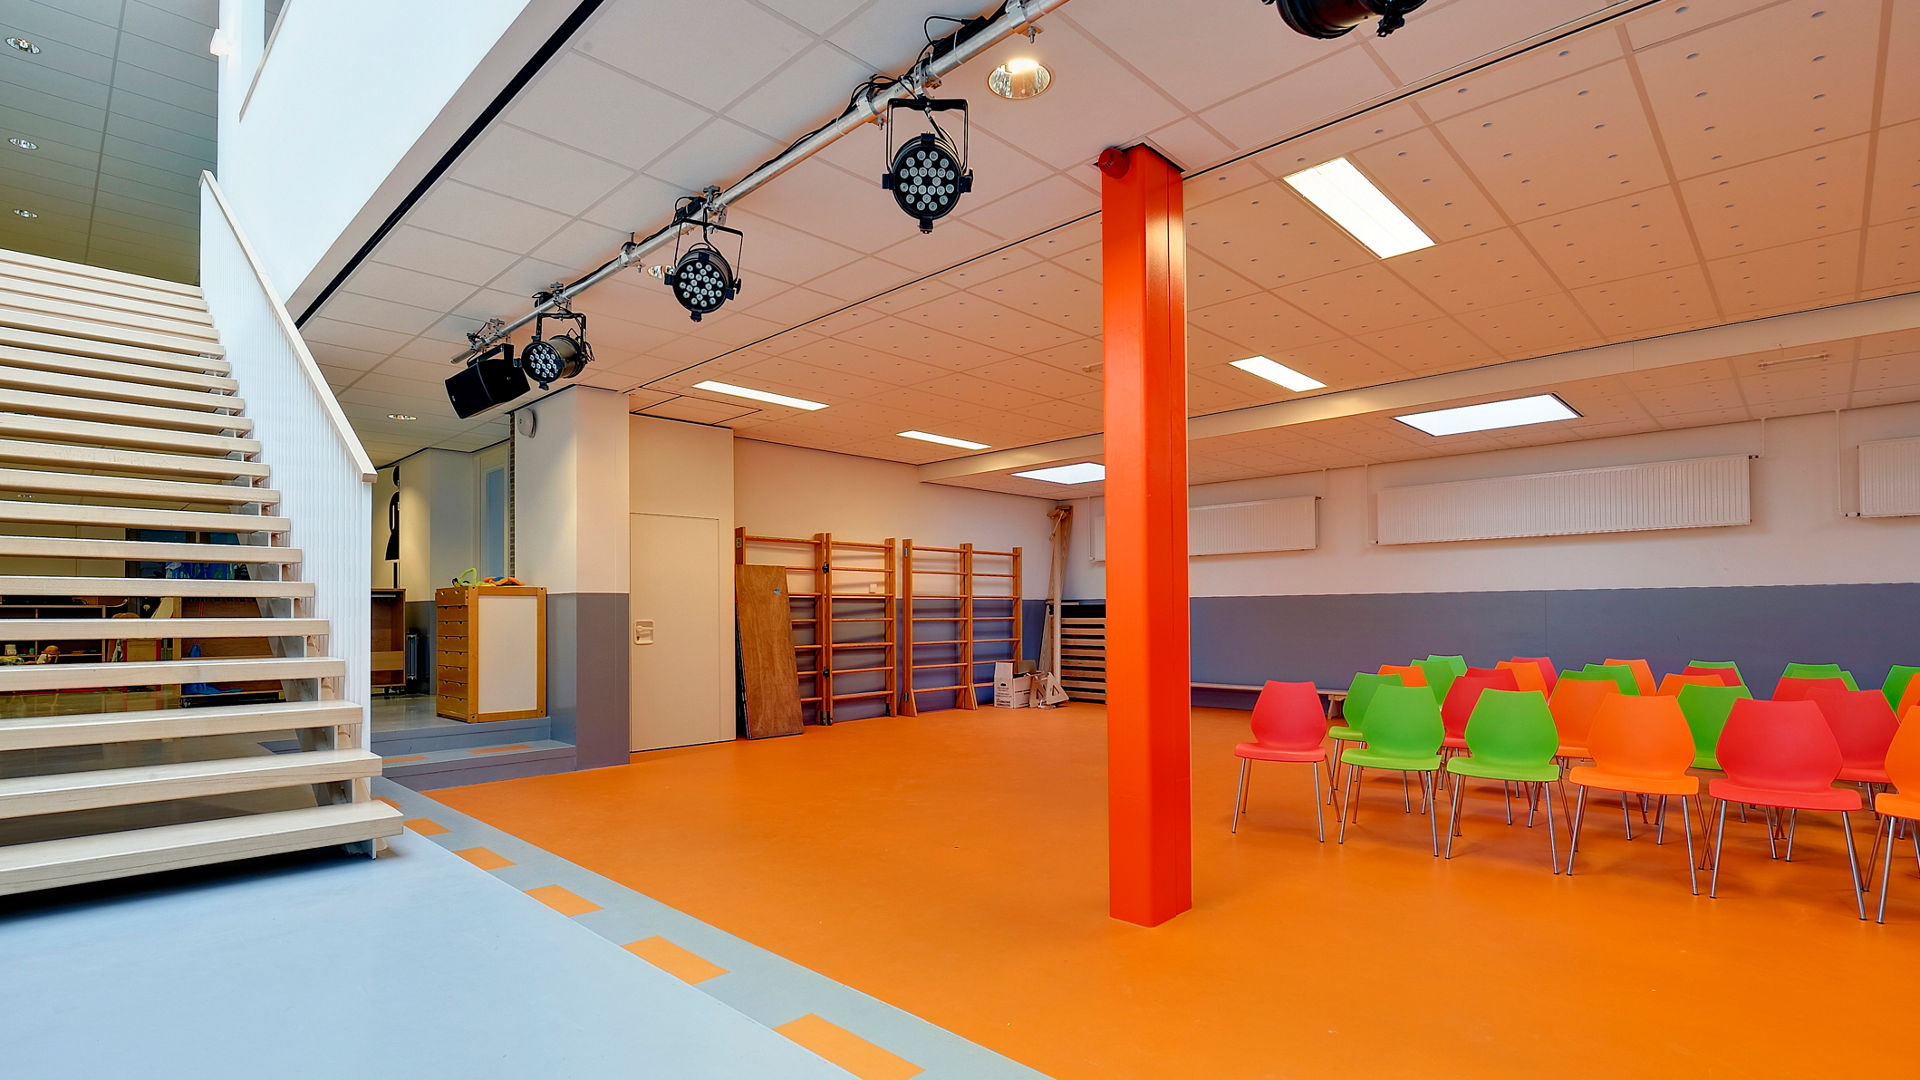 Basisschool De Vuurvogel, Tilburg floor finished project